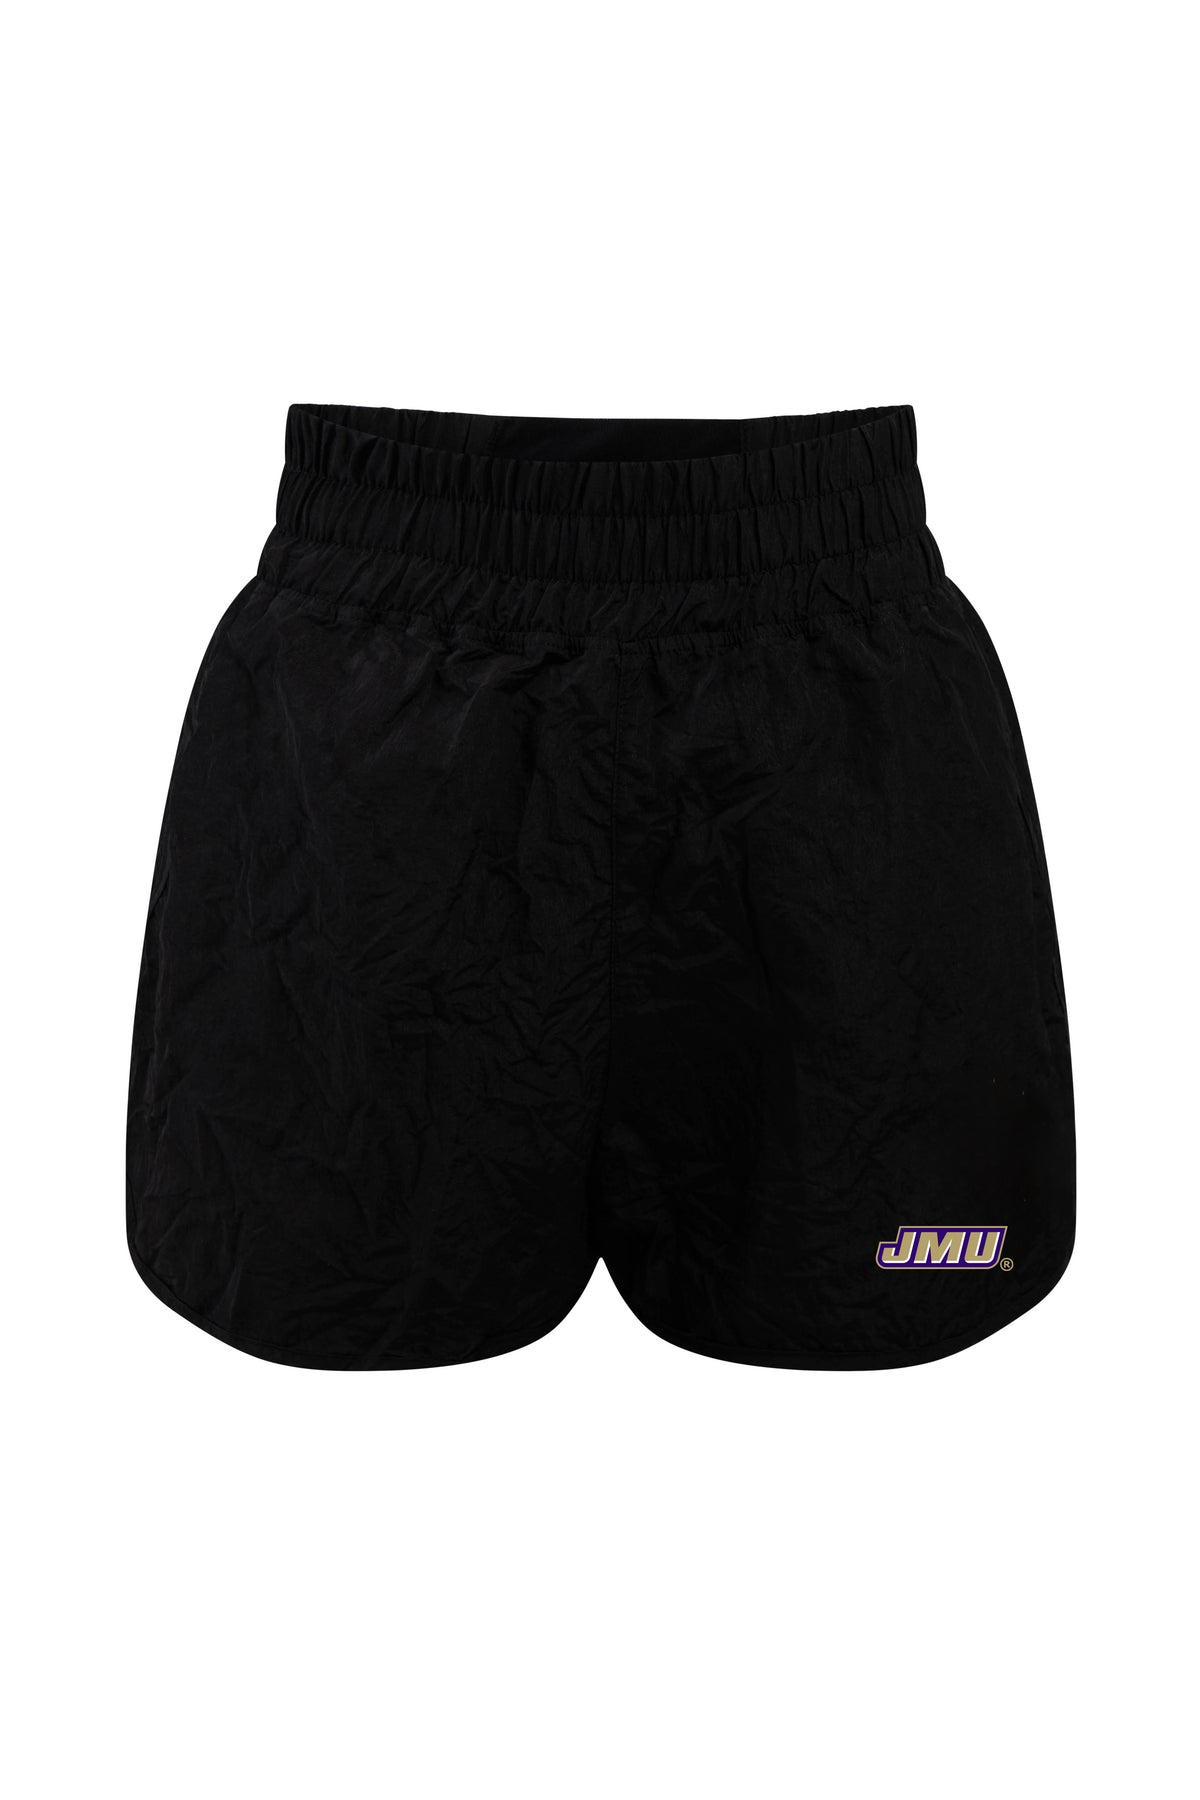 James Madison University Boxer Short